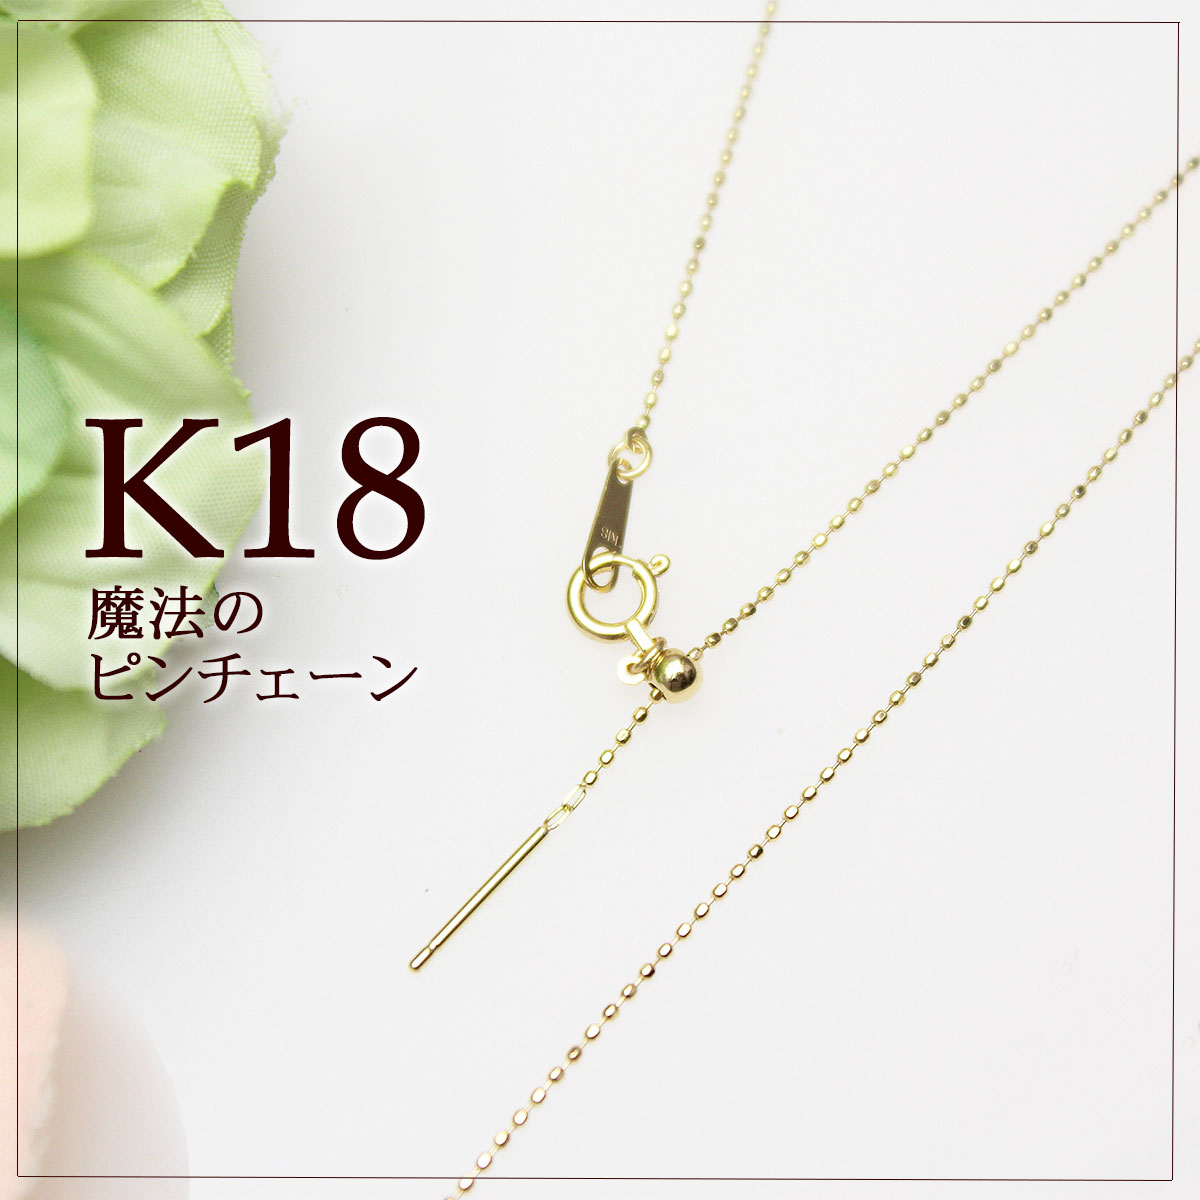 7,040円K18☆ダイヤモンドネックレス☆0.20ct☆スライドチェーン